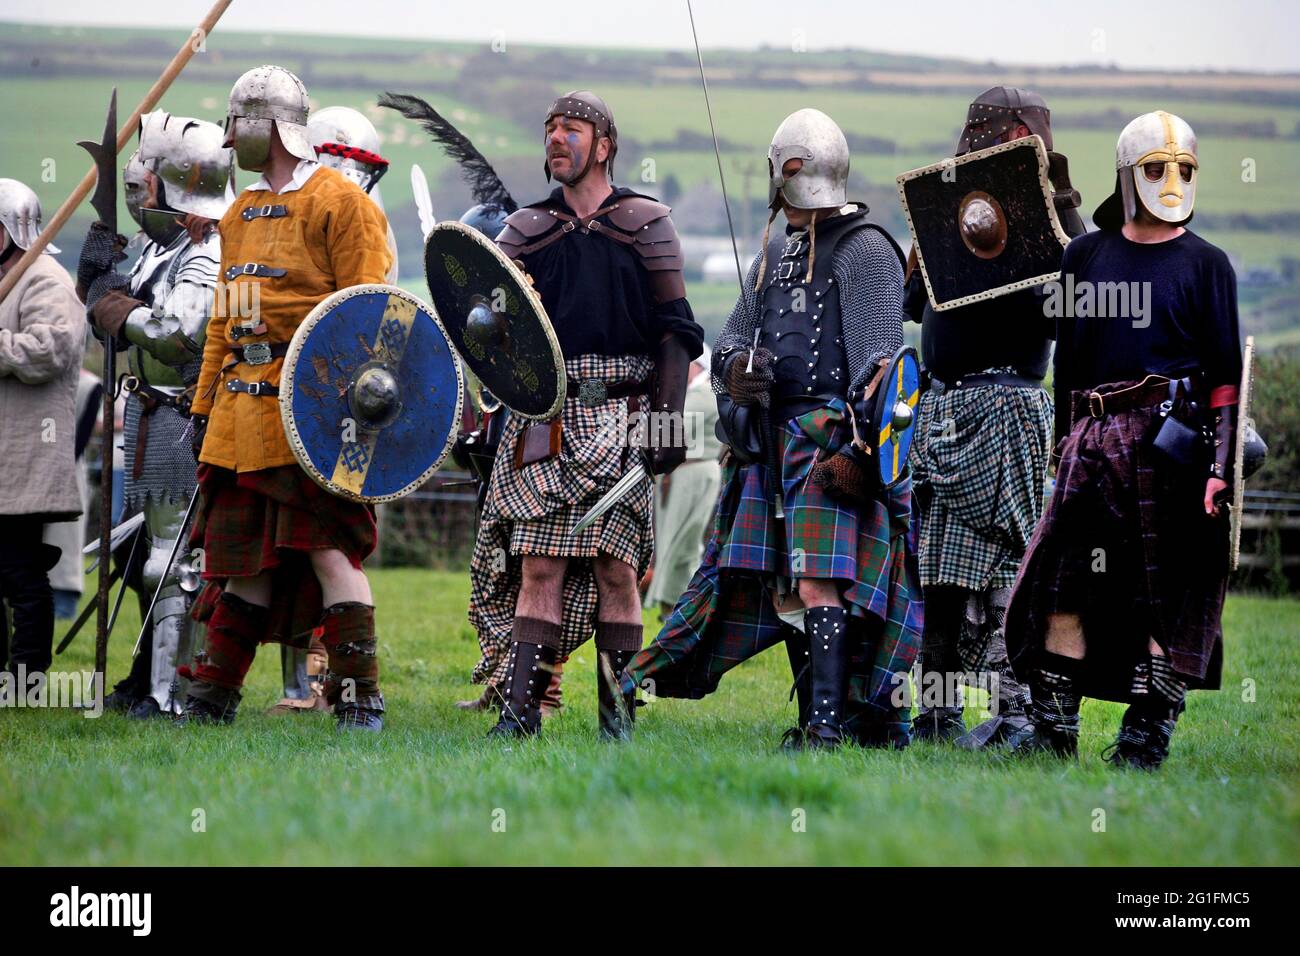 Schlacht von Tintagel, Schlachtnachstellung, historische Schlacht, Teilnehmer, Männer im Kilt, Tartan, Schwert und Schild, King Arthur, Tintagel, Cornwall Stockfoto